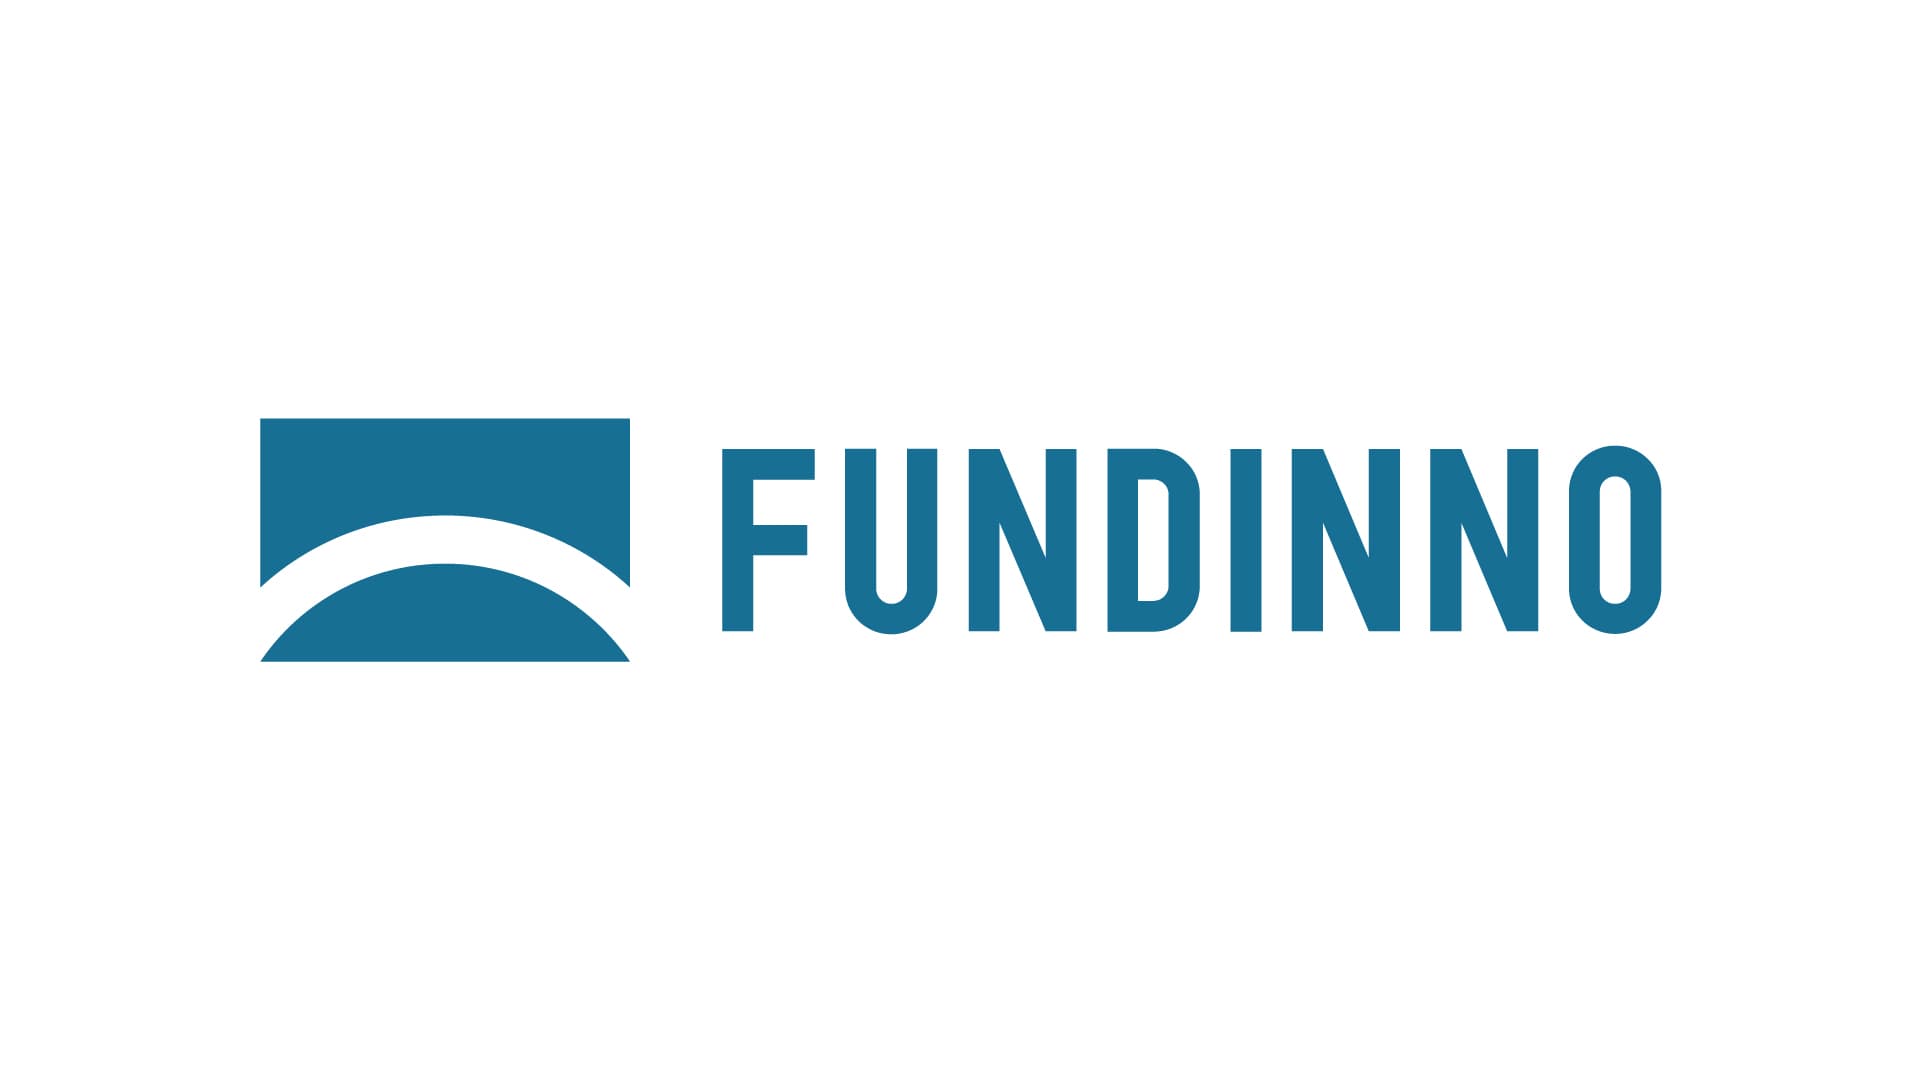 株式会社FCE Holdings、株式投資型クラウドファンディング「FUNDINNO」へ出資